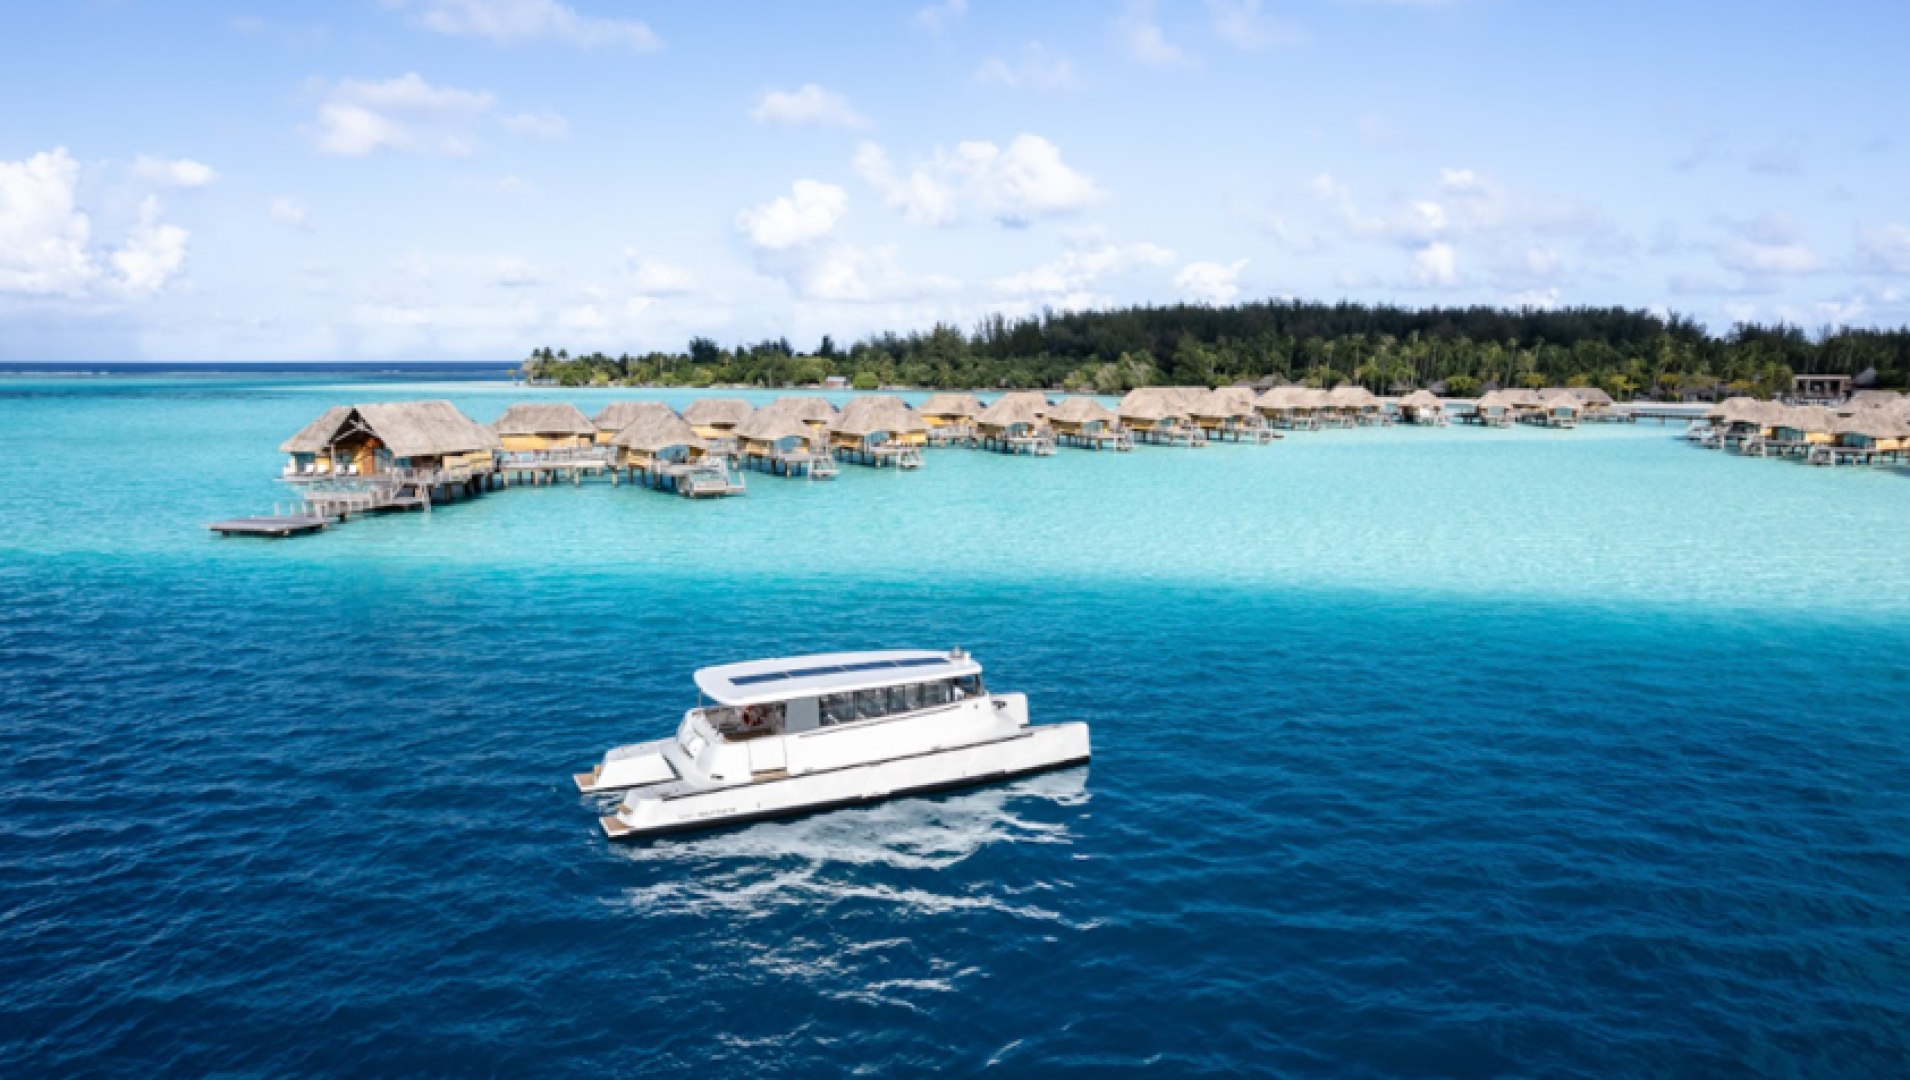 Soel Yachts consegna due nuovi catamarani a propulsione solare ad un resort a Bora Bora